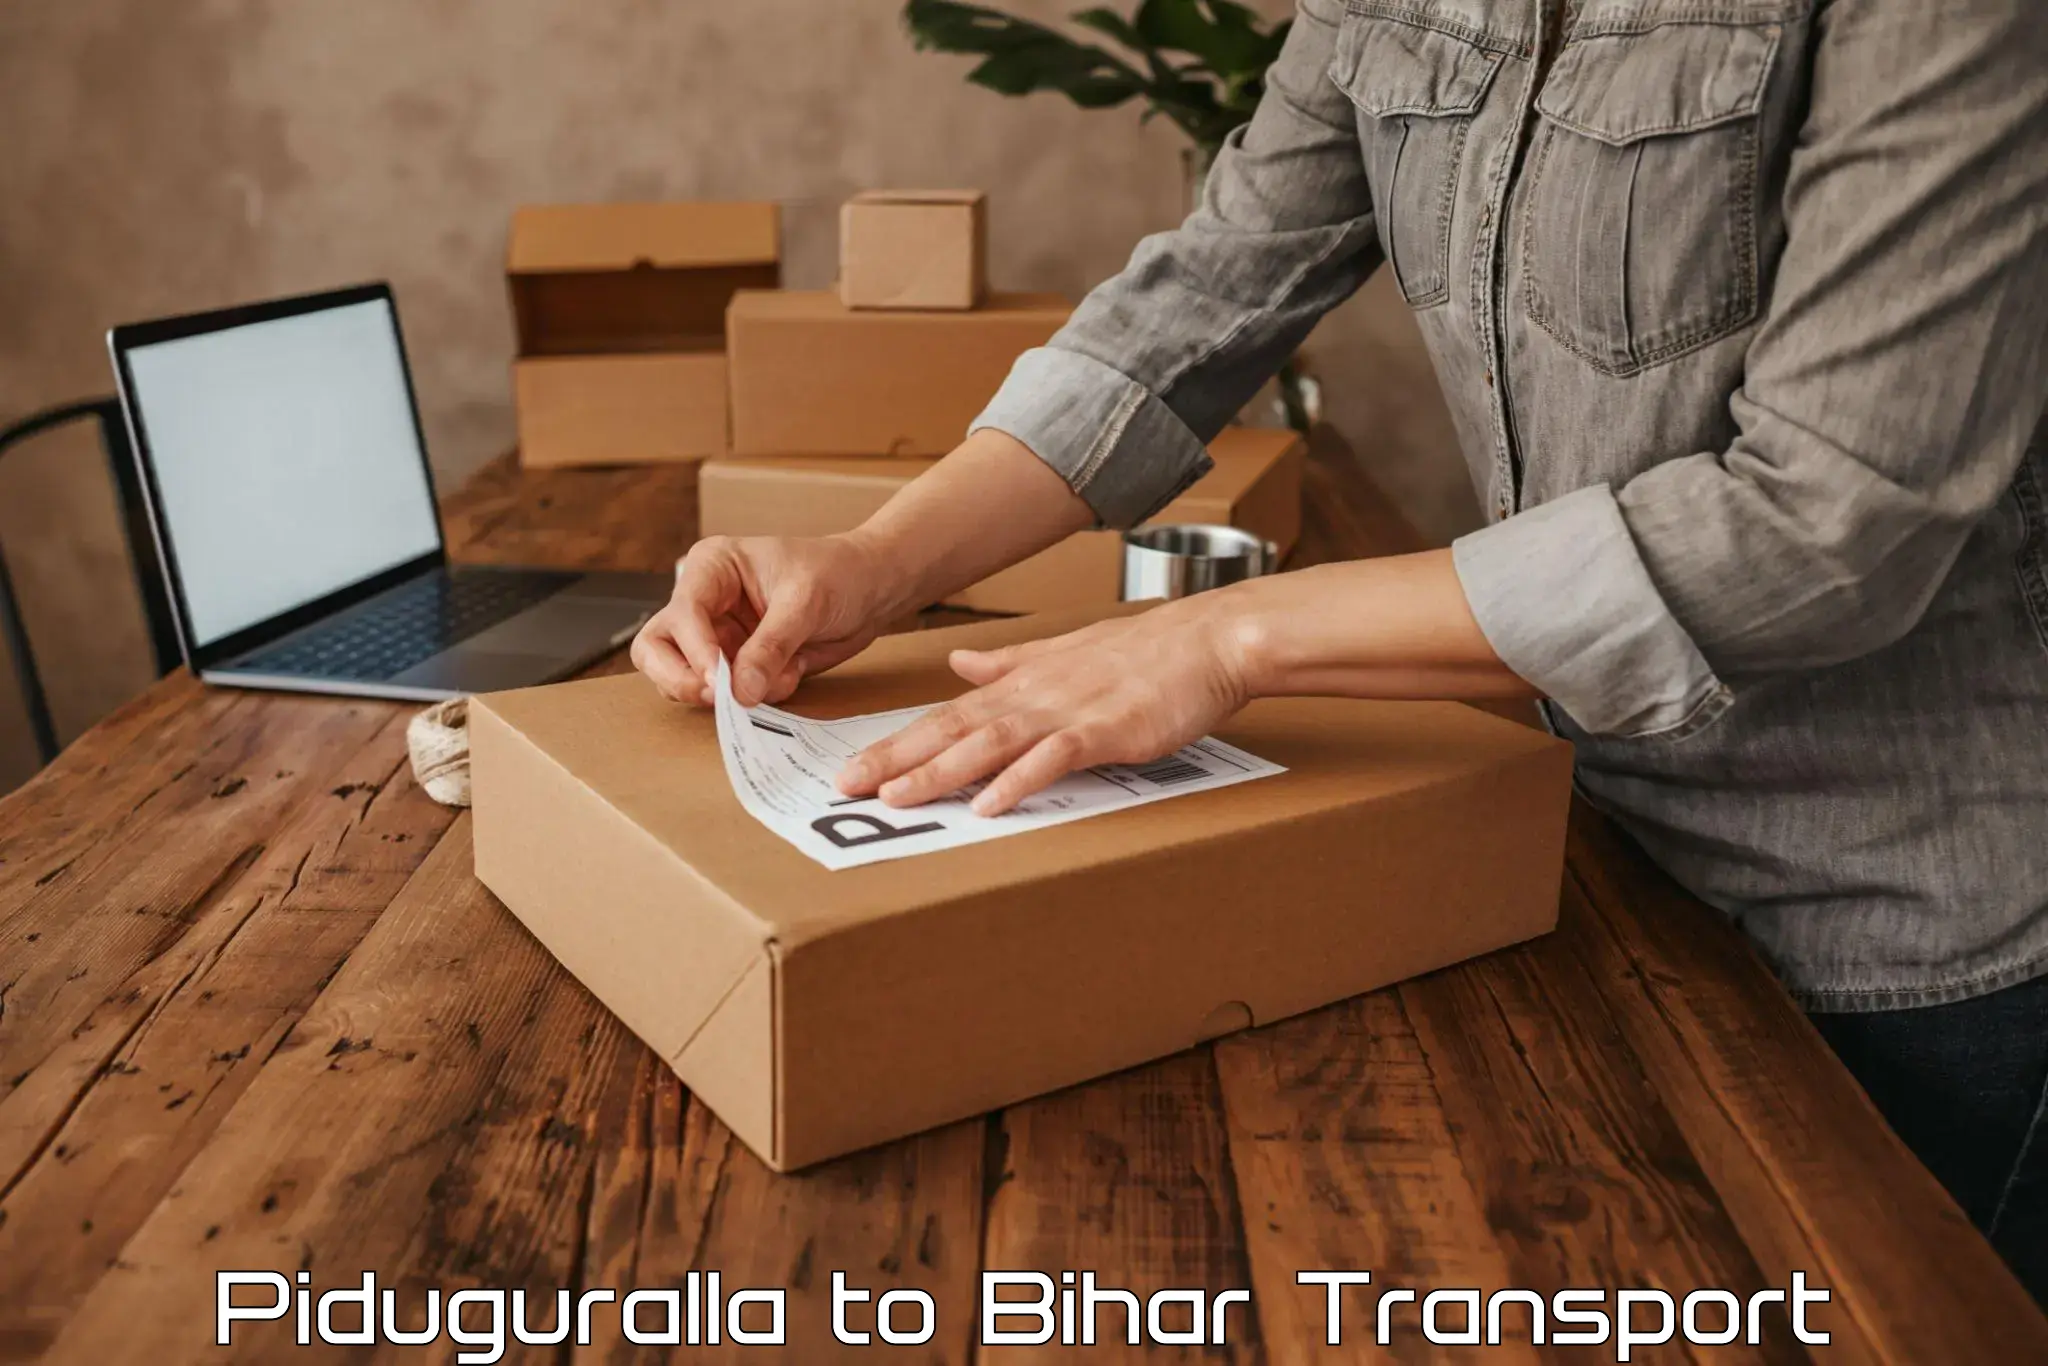 Bike shipping service Piduguralla to Banka